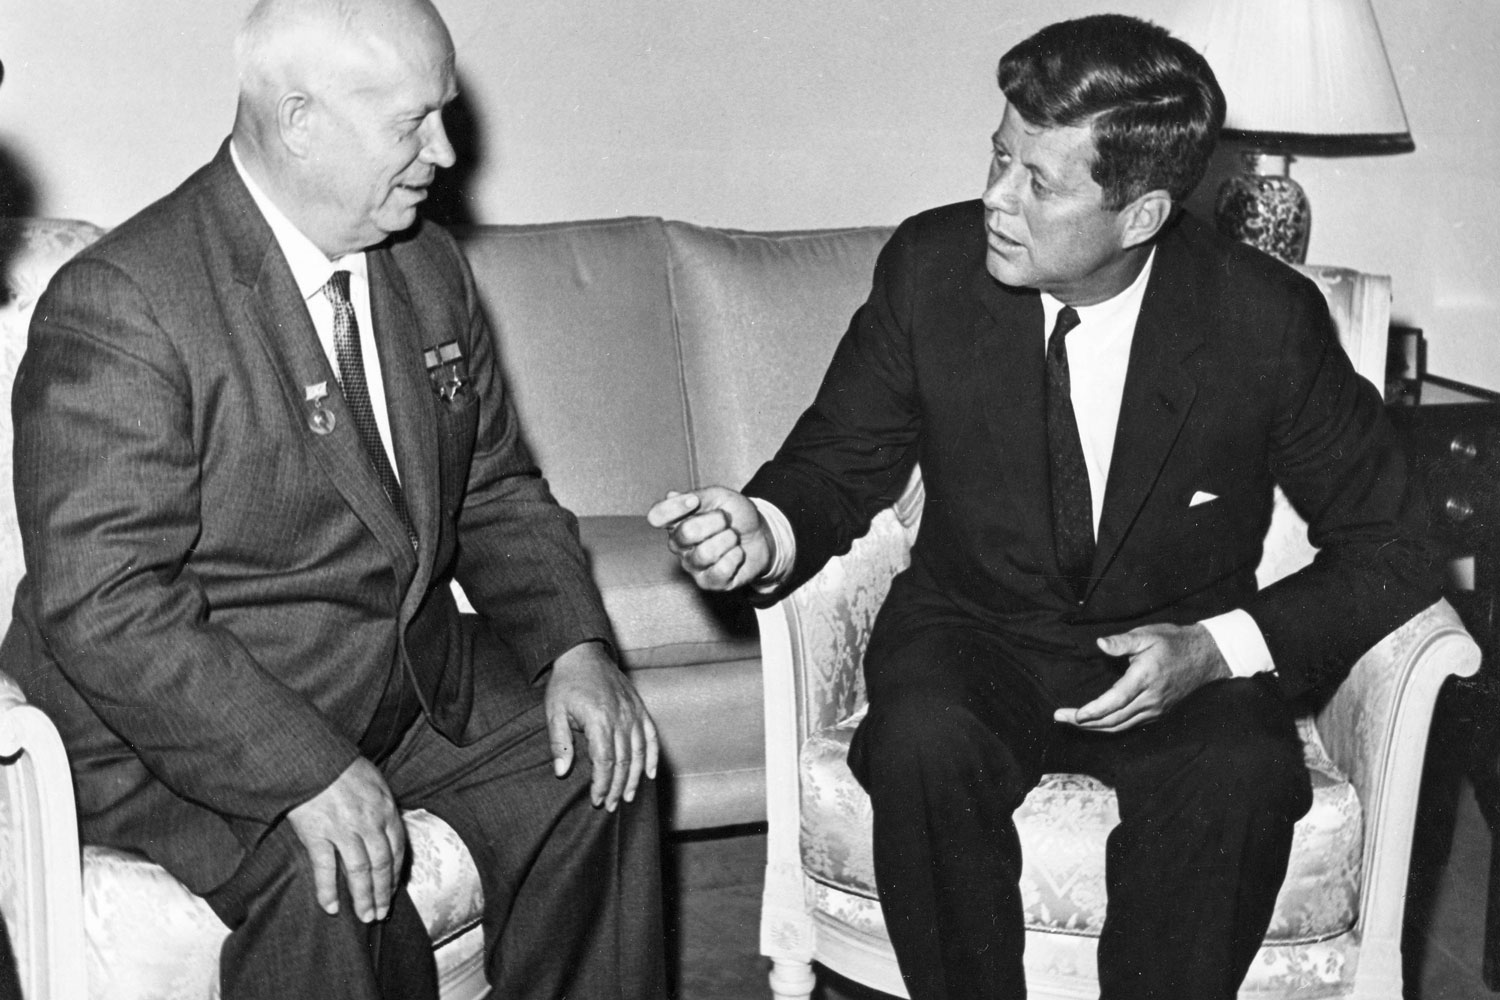 La reunión de John Kennedy con Khrushchev evitó el enfrentamiento atómico con la URSS